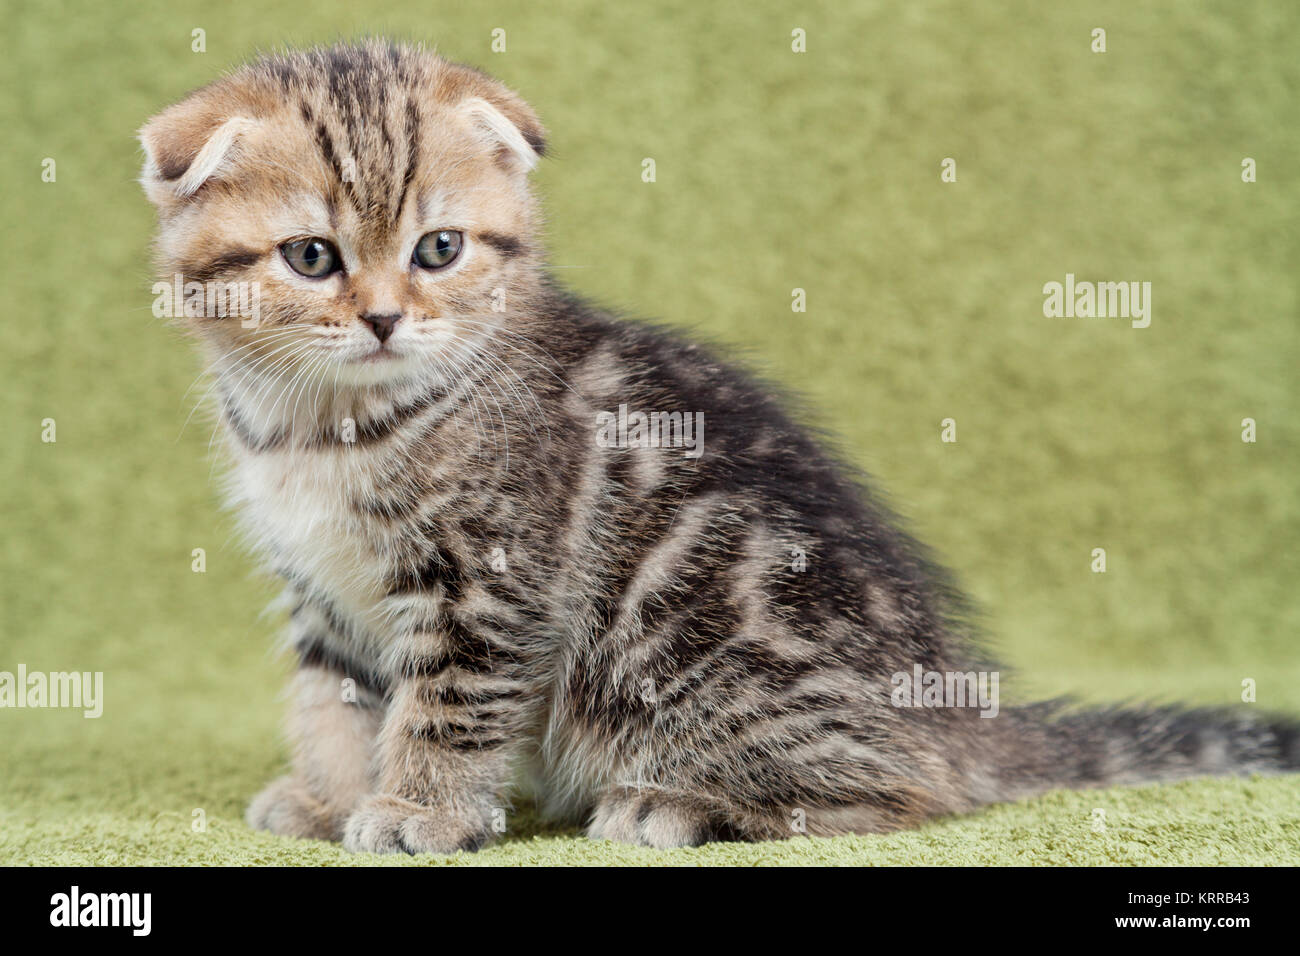 Little scottish kitten on green background Stock Photo